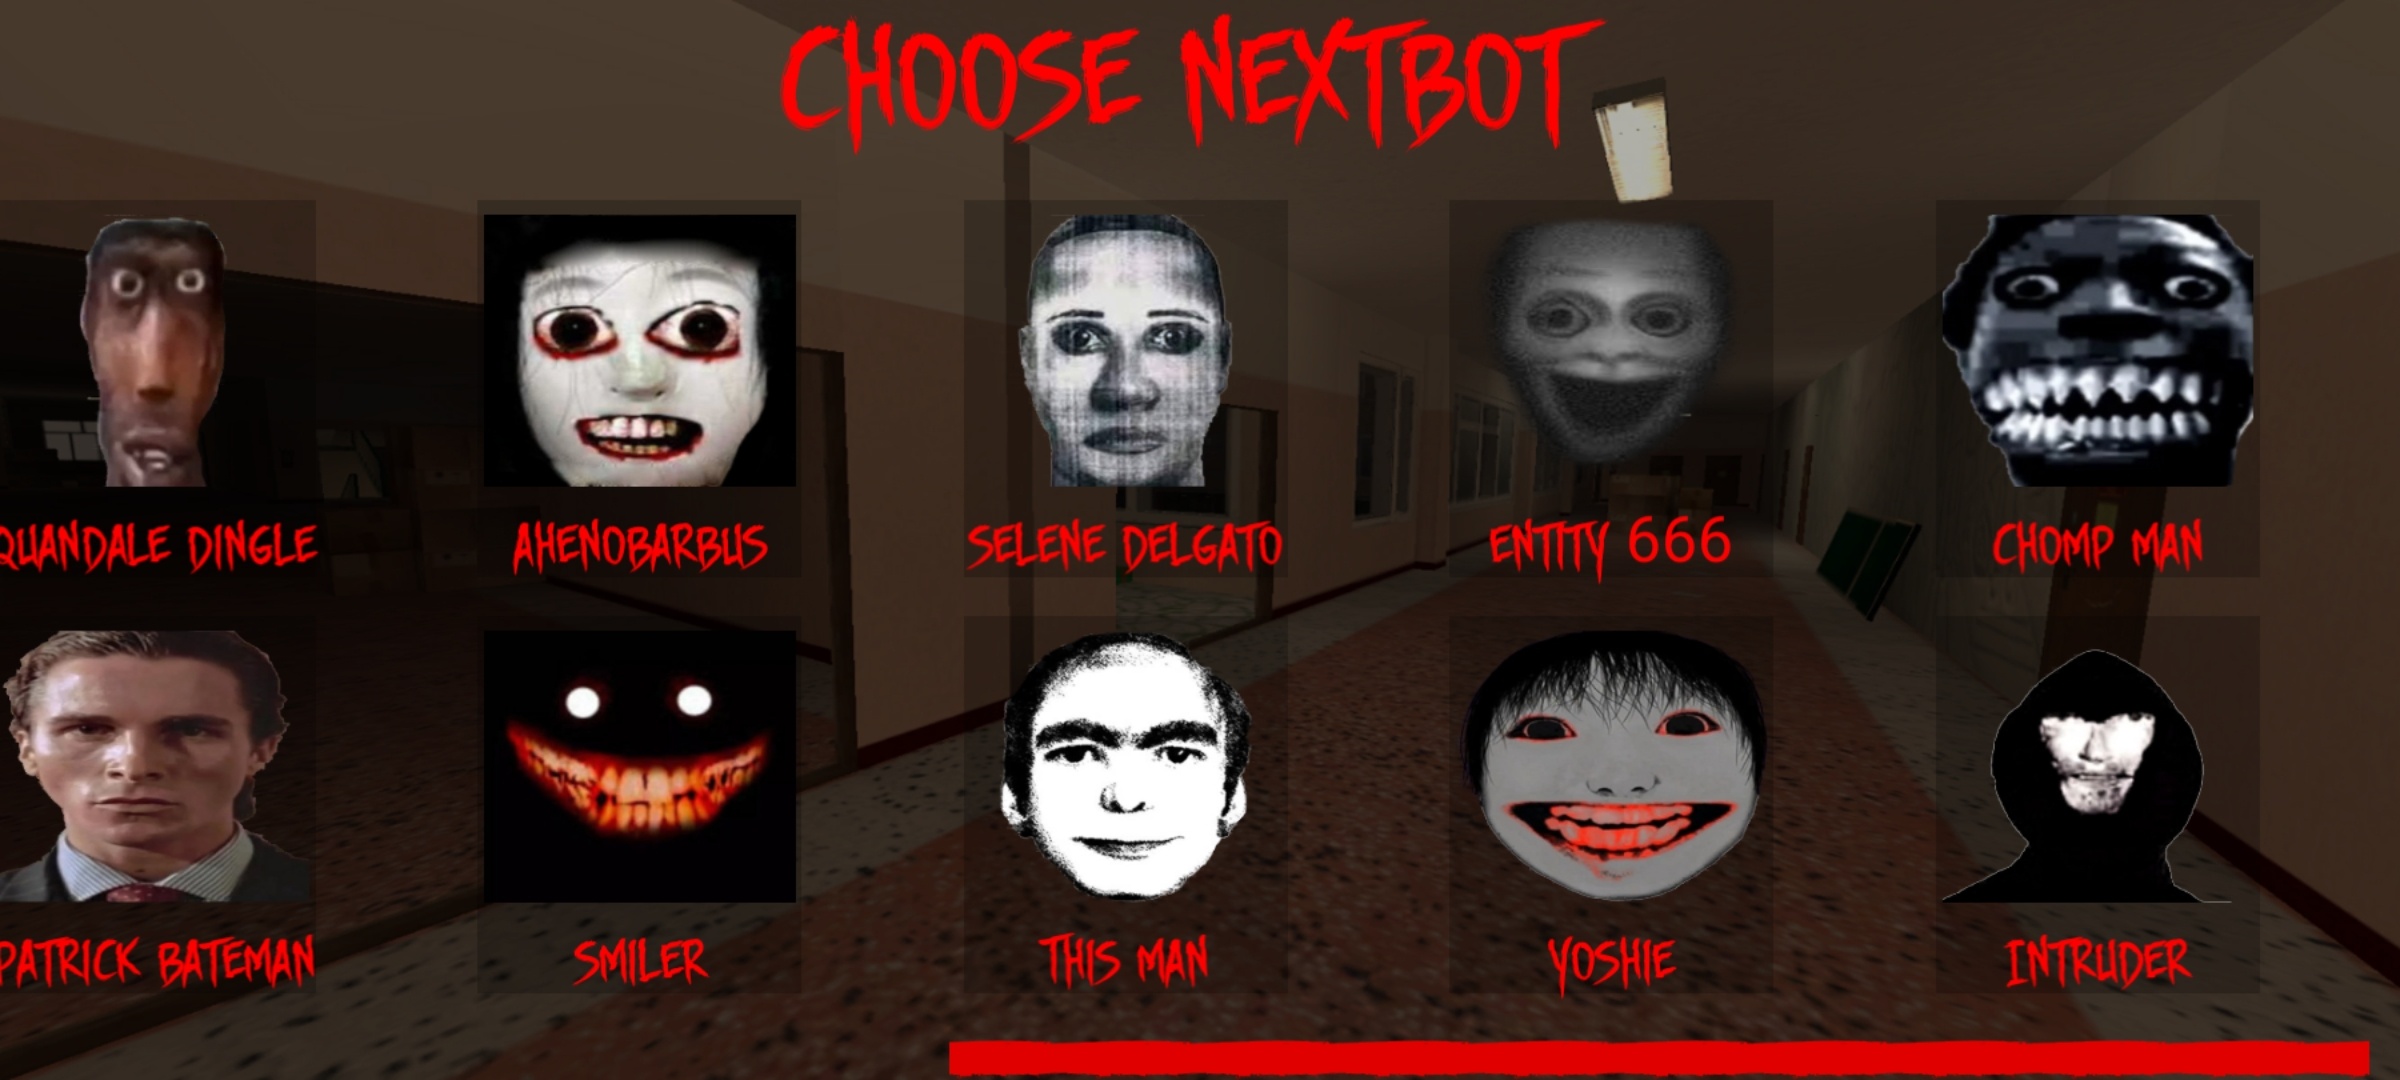 Nextbot Chasing, Game Horor Nomor 1 Di Play Store Yang Bikin Jantung Deg-Degan!